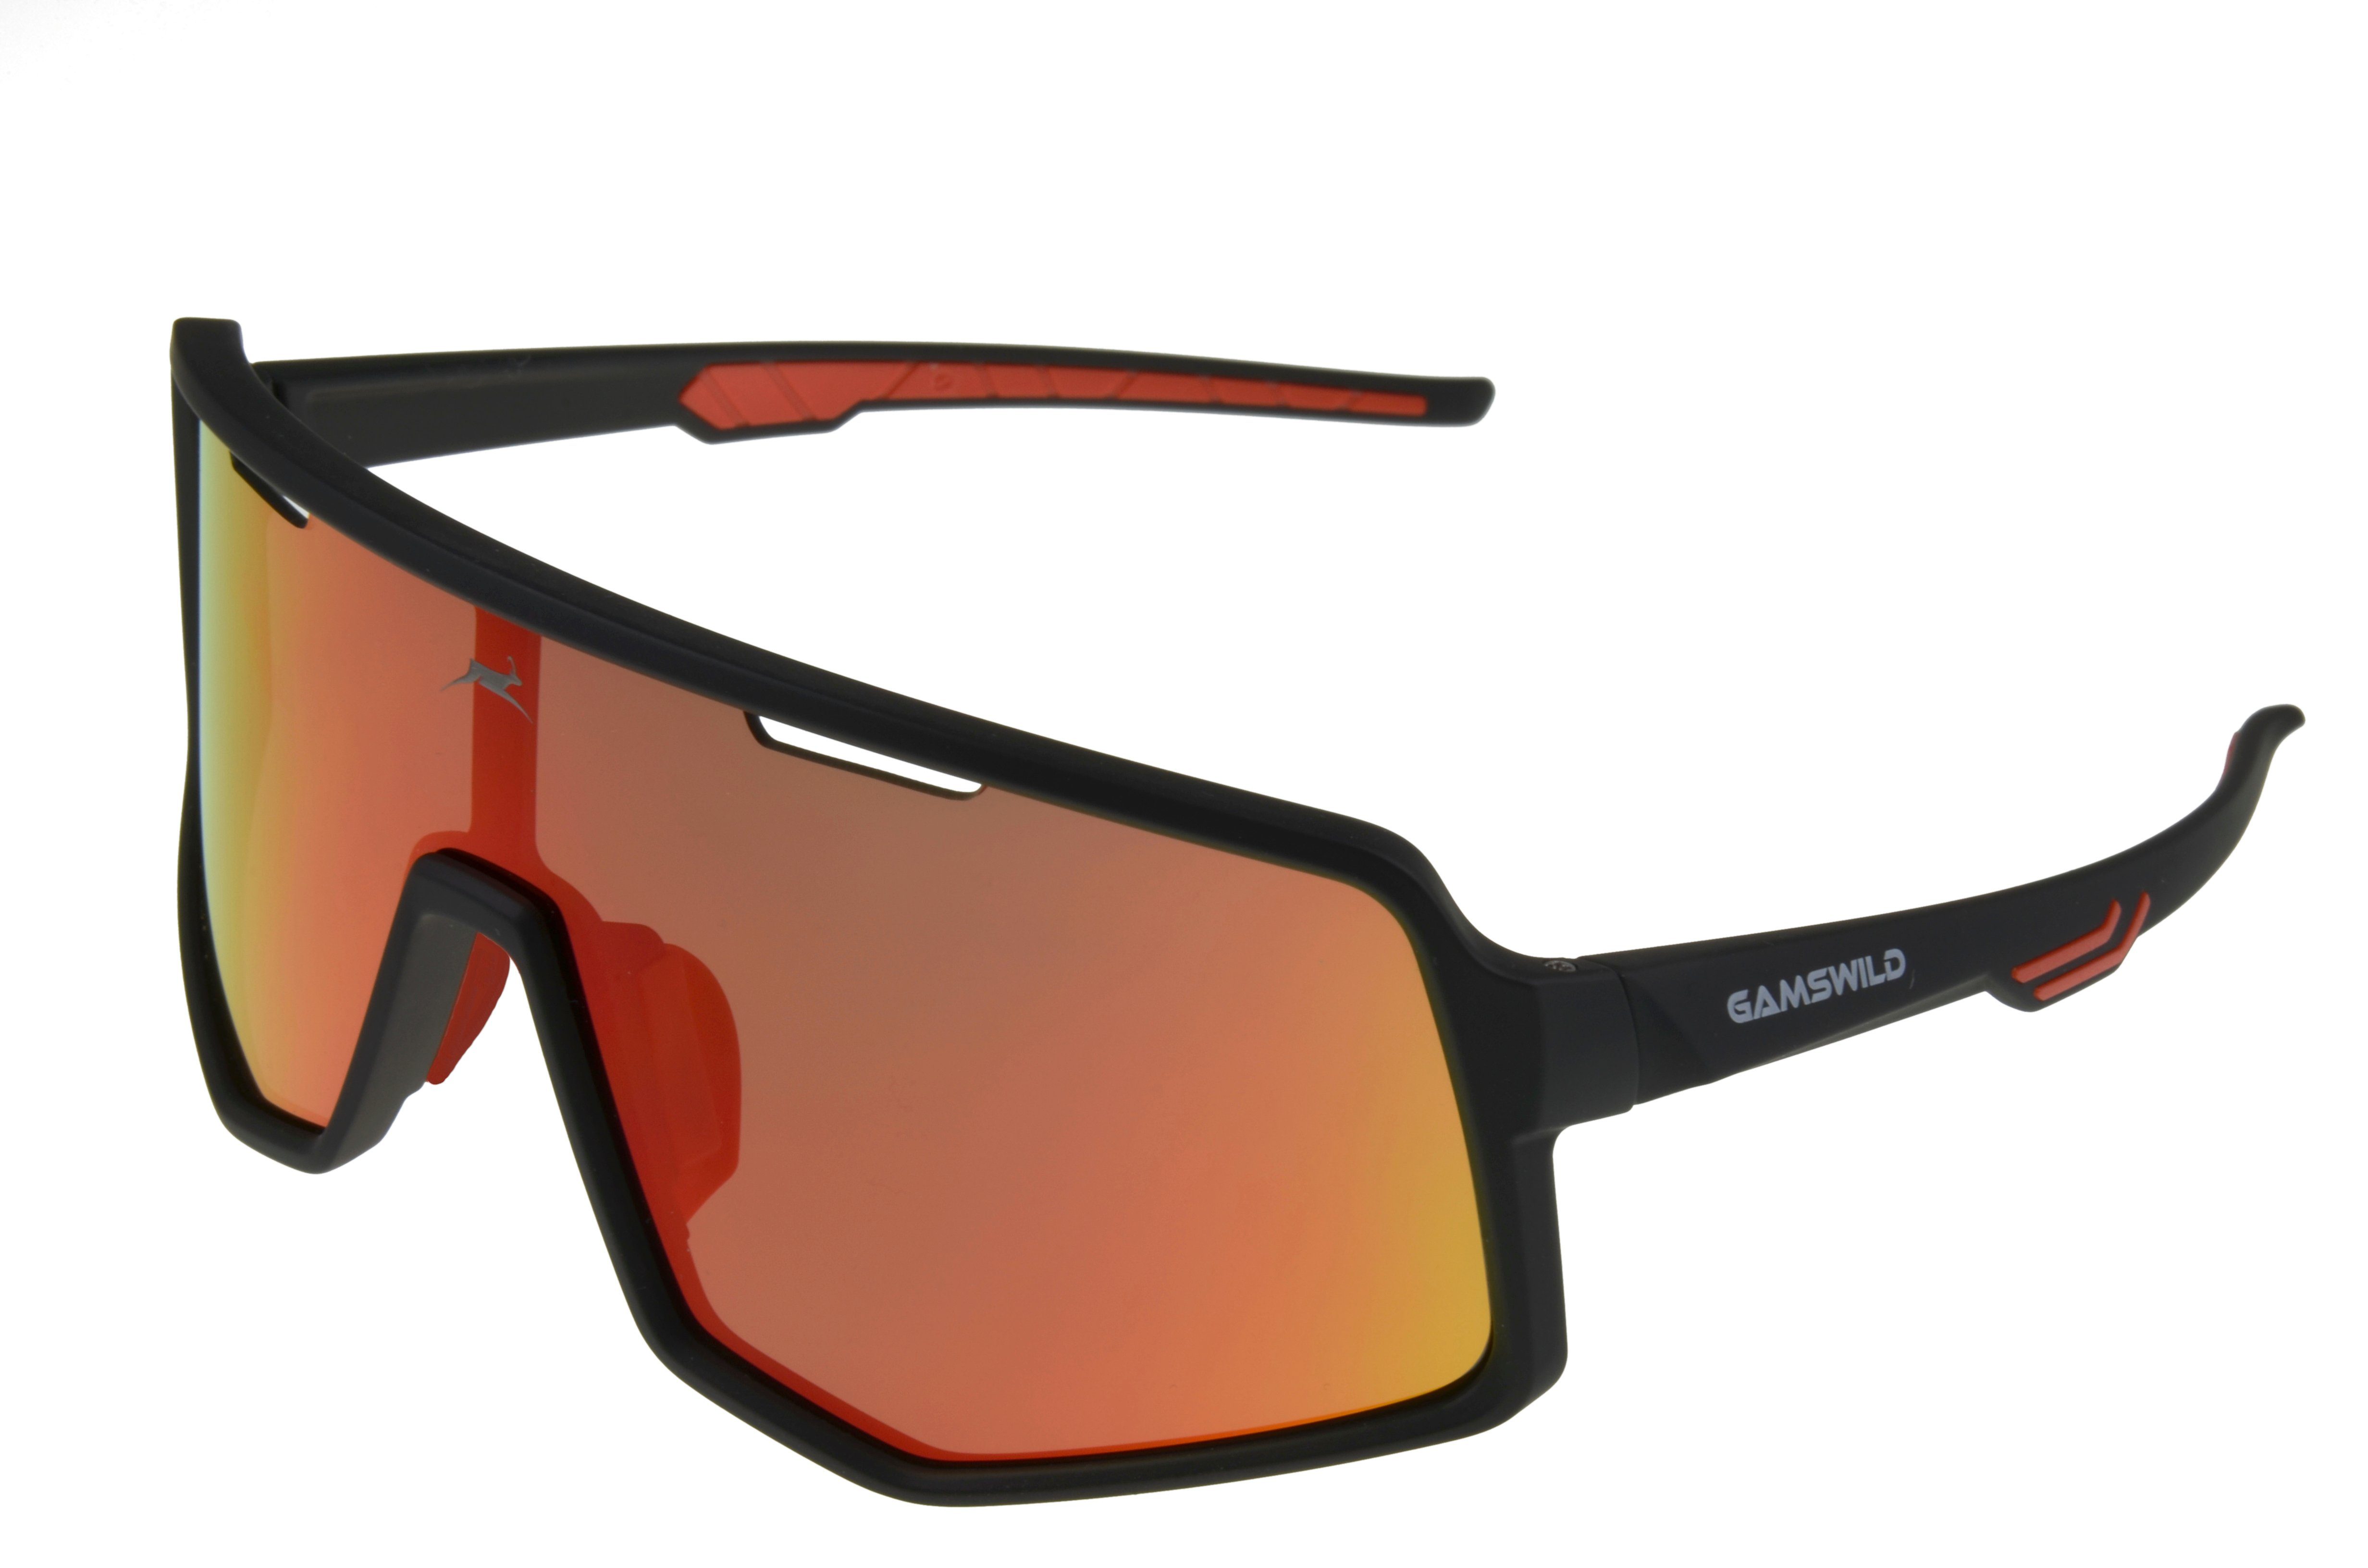 Fahrradbrille WS4042 Sonnenbrille Skibrille Herren lila, Unisex Gamswild Unisex, grün schwarz-rot, schwarz-blau, Sonnenbrille TR90 Damen